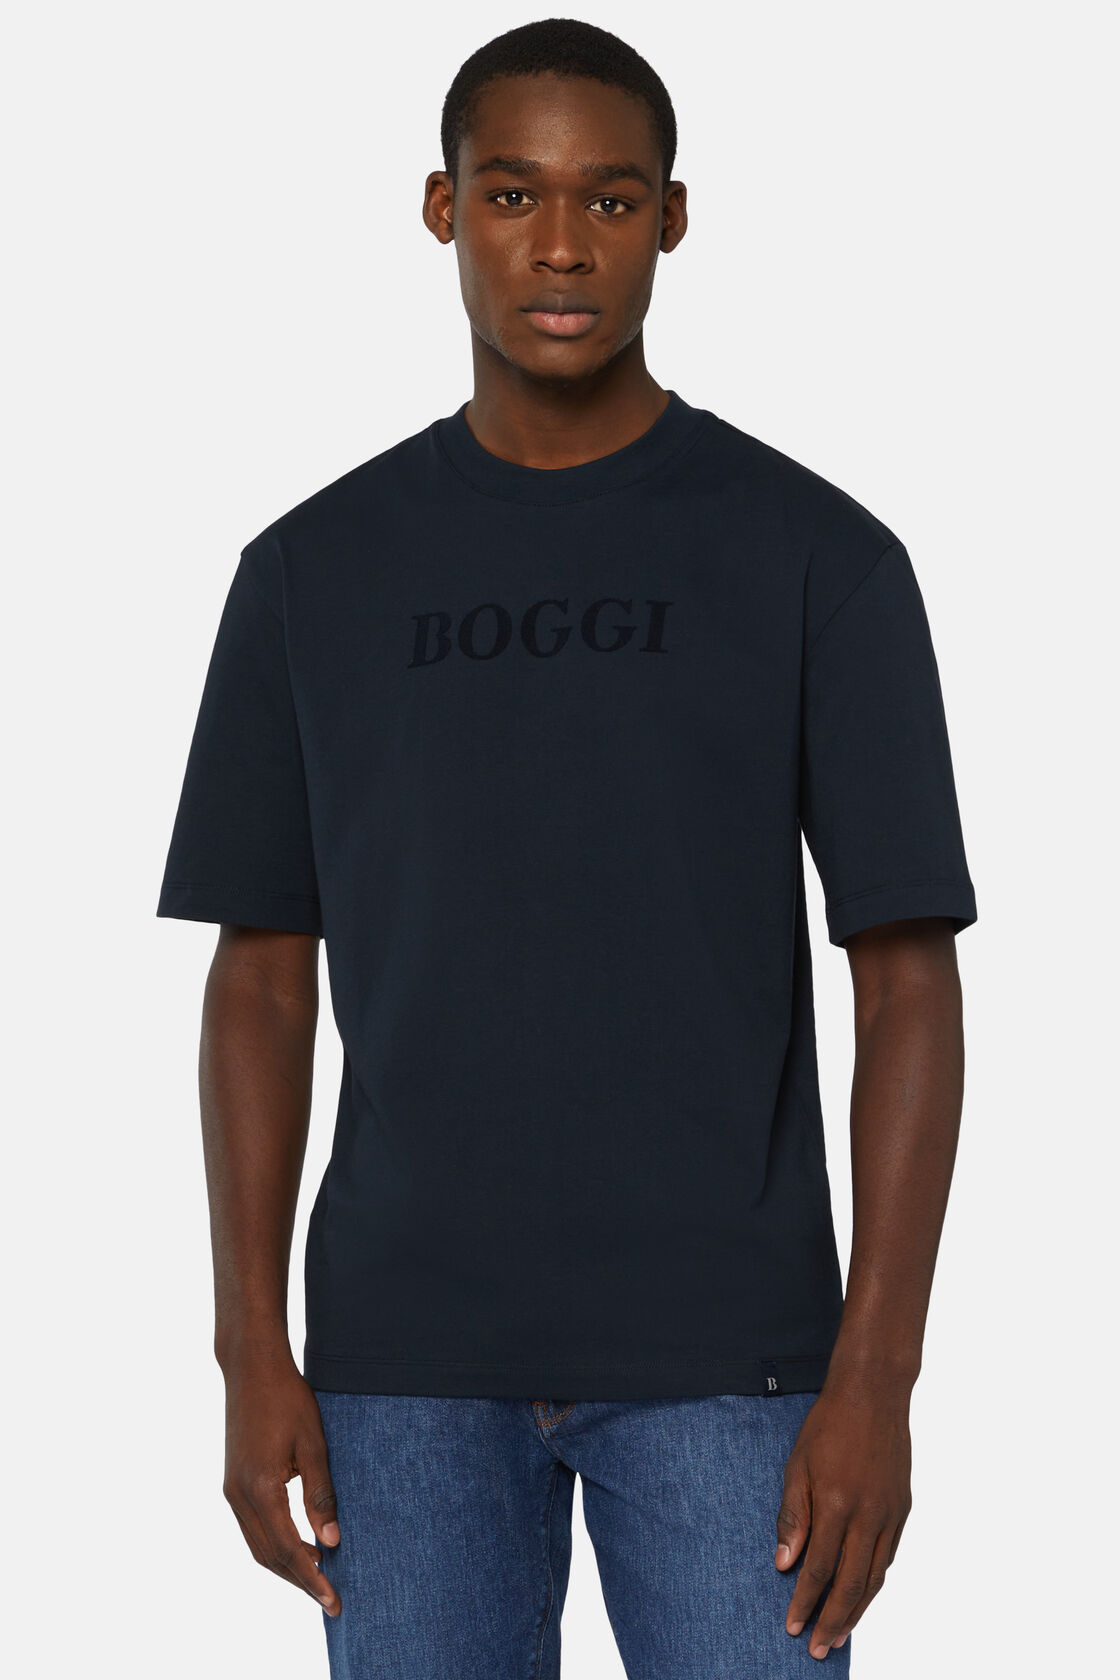 T-Shirt Aus Baumwolle, Navy blau, hi-res